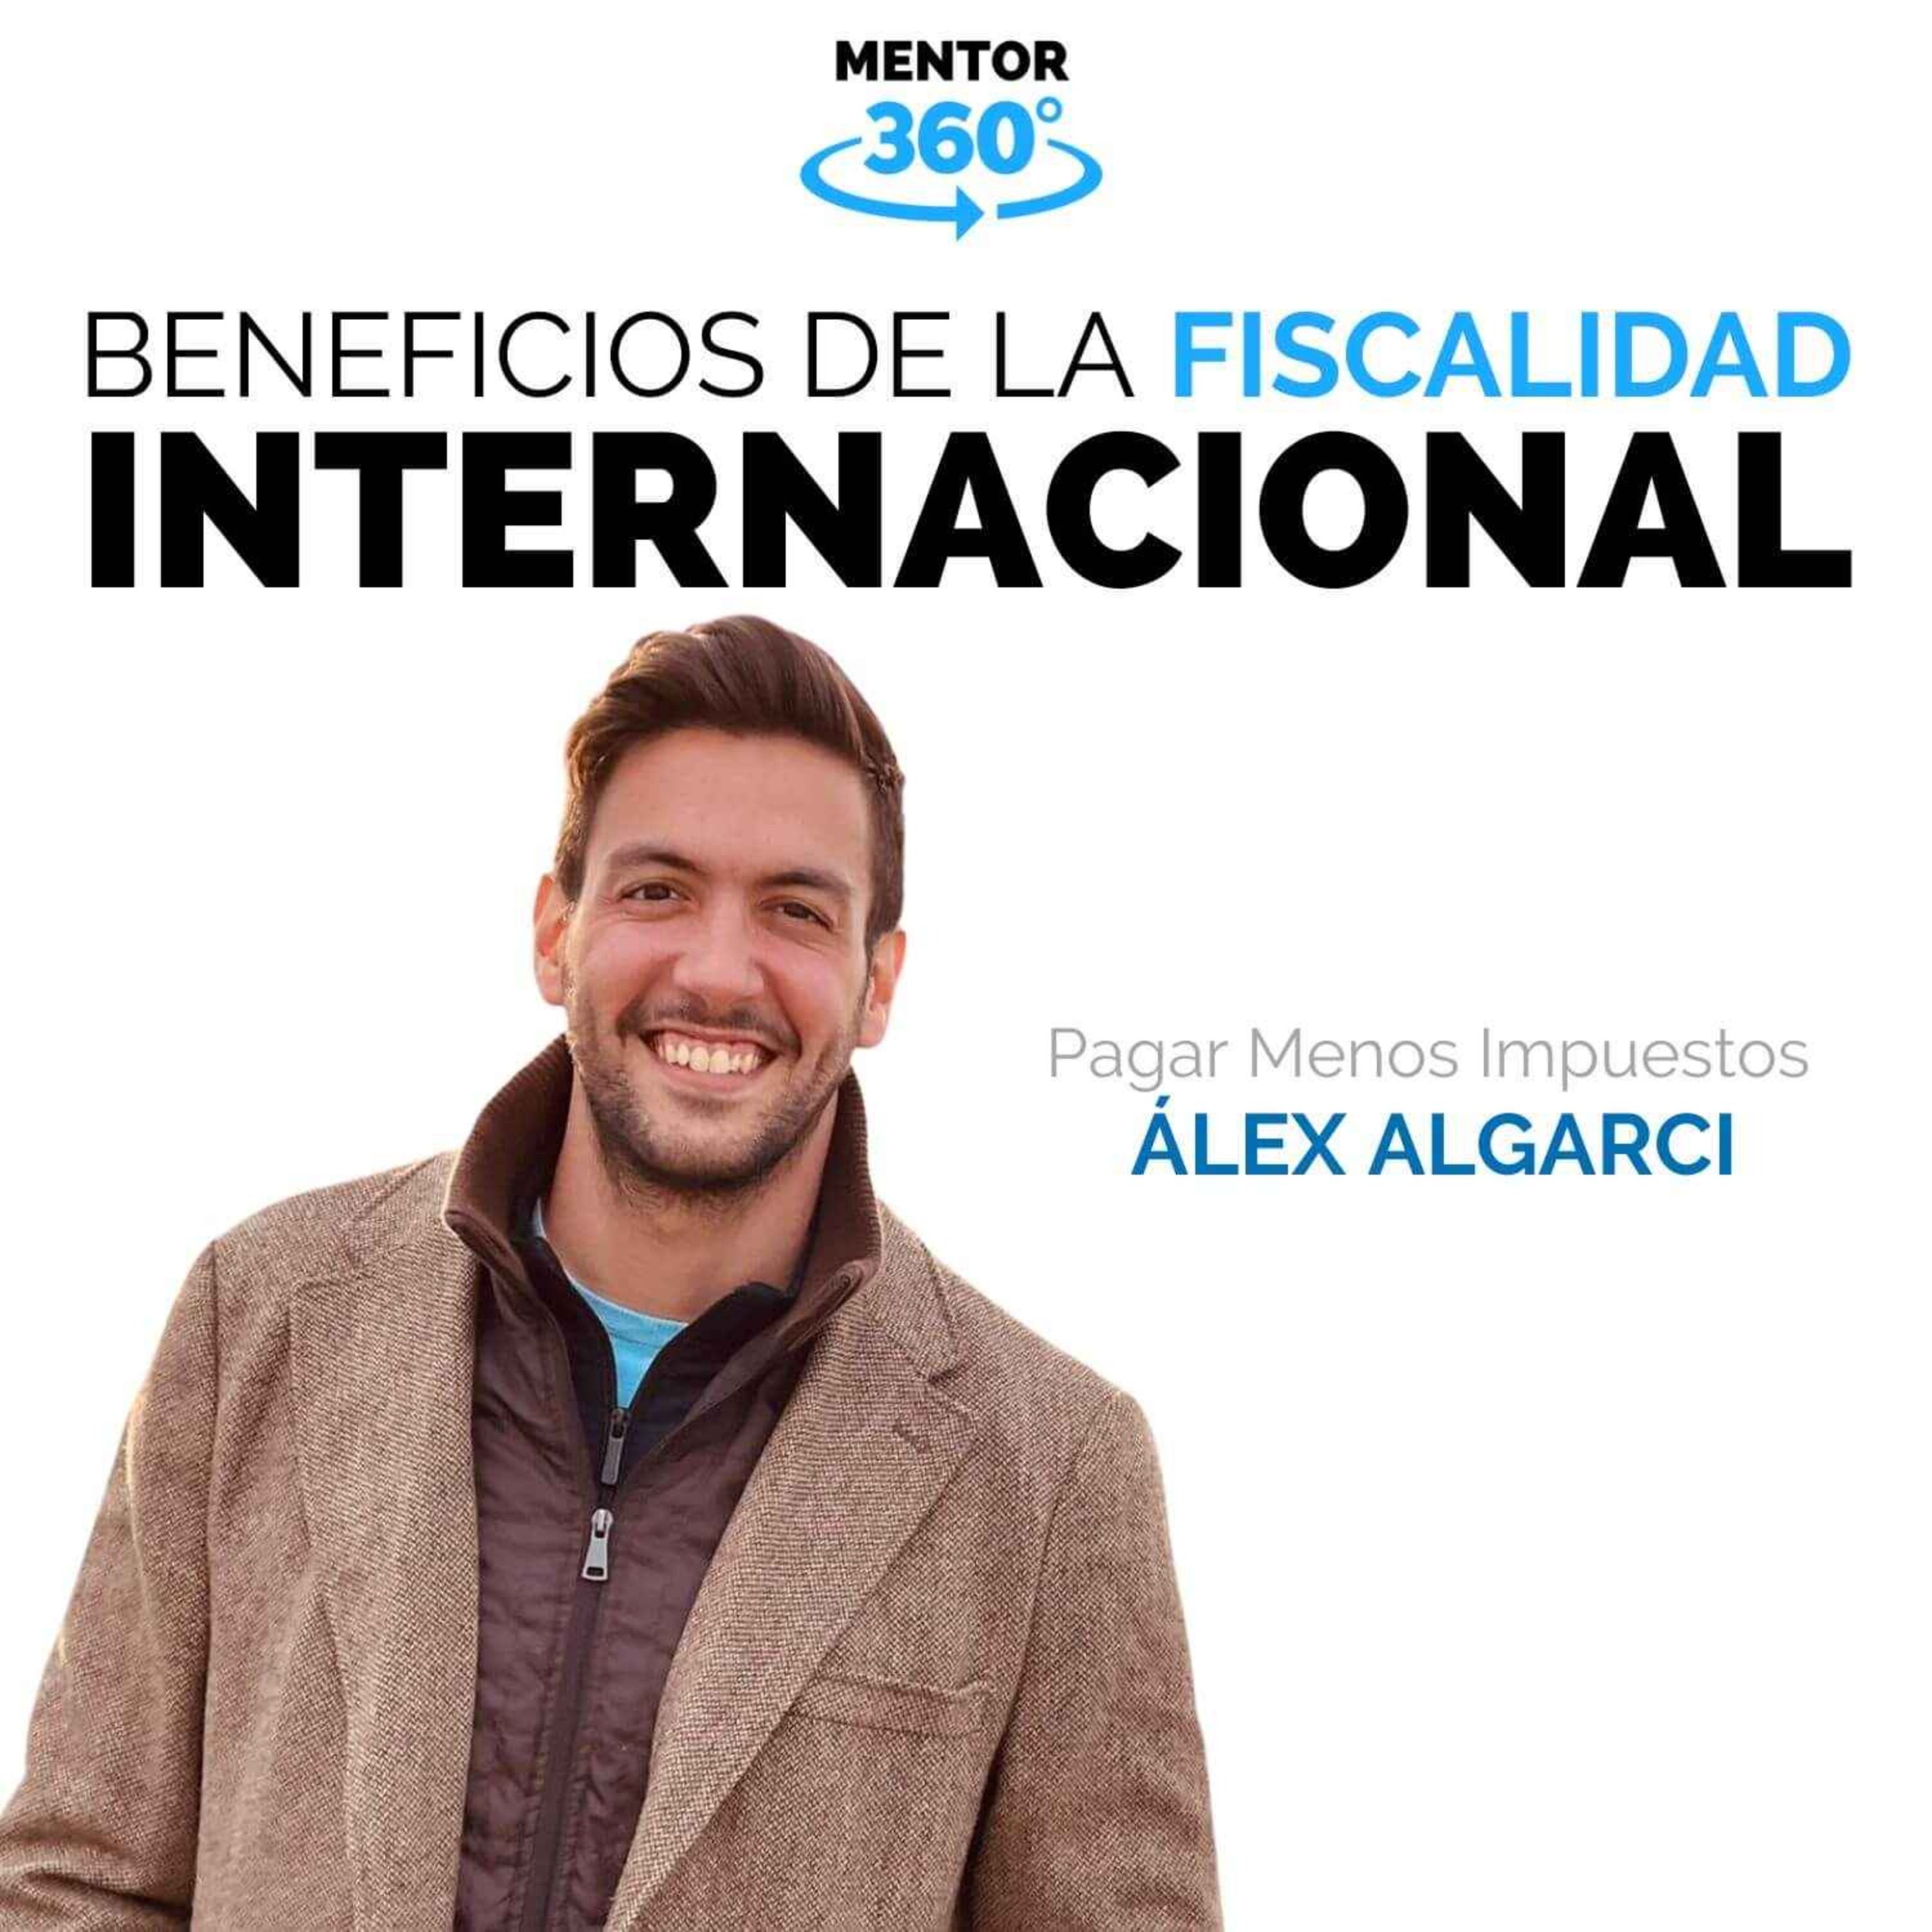 Beneficios de la Fiscalidad Internacional - Alex Algarci - Ahorrar Impuestos - MENTOR360